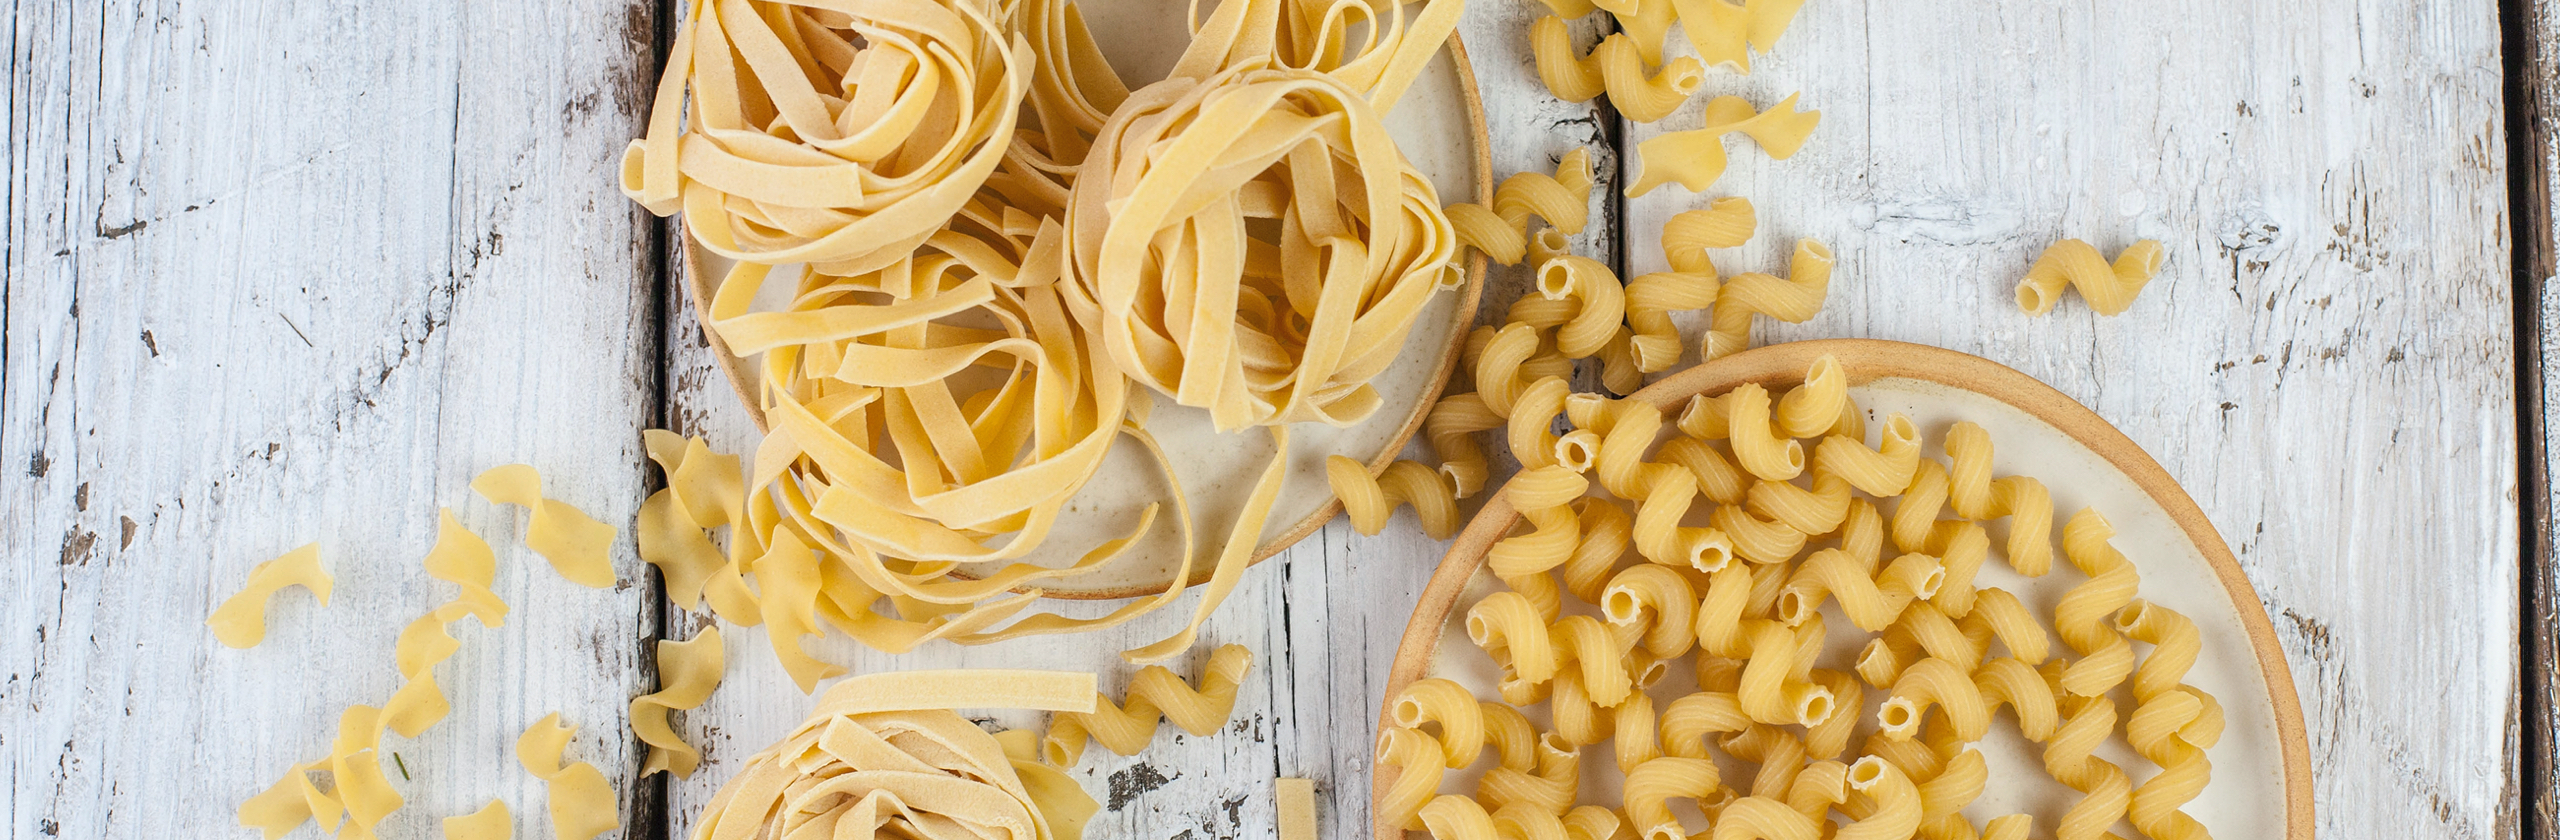 Cuál es la diferencia entre pasta integral y pasta tradicional? - Pastas  Gallo : Pastas Gallo